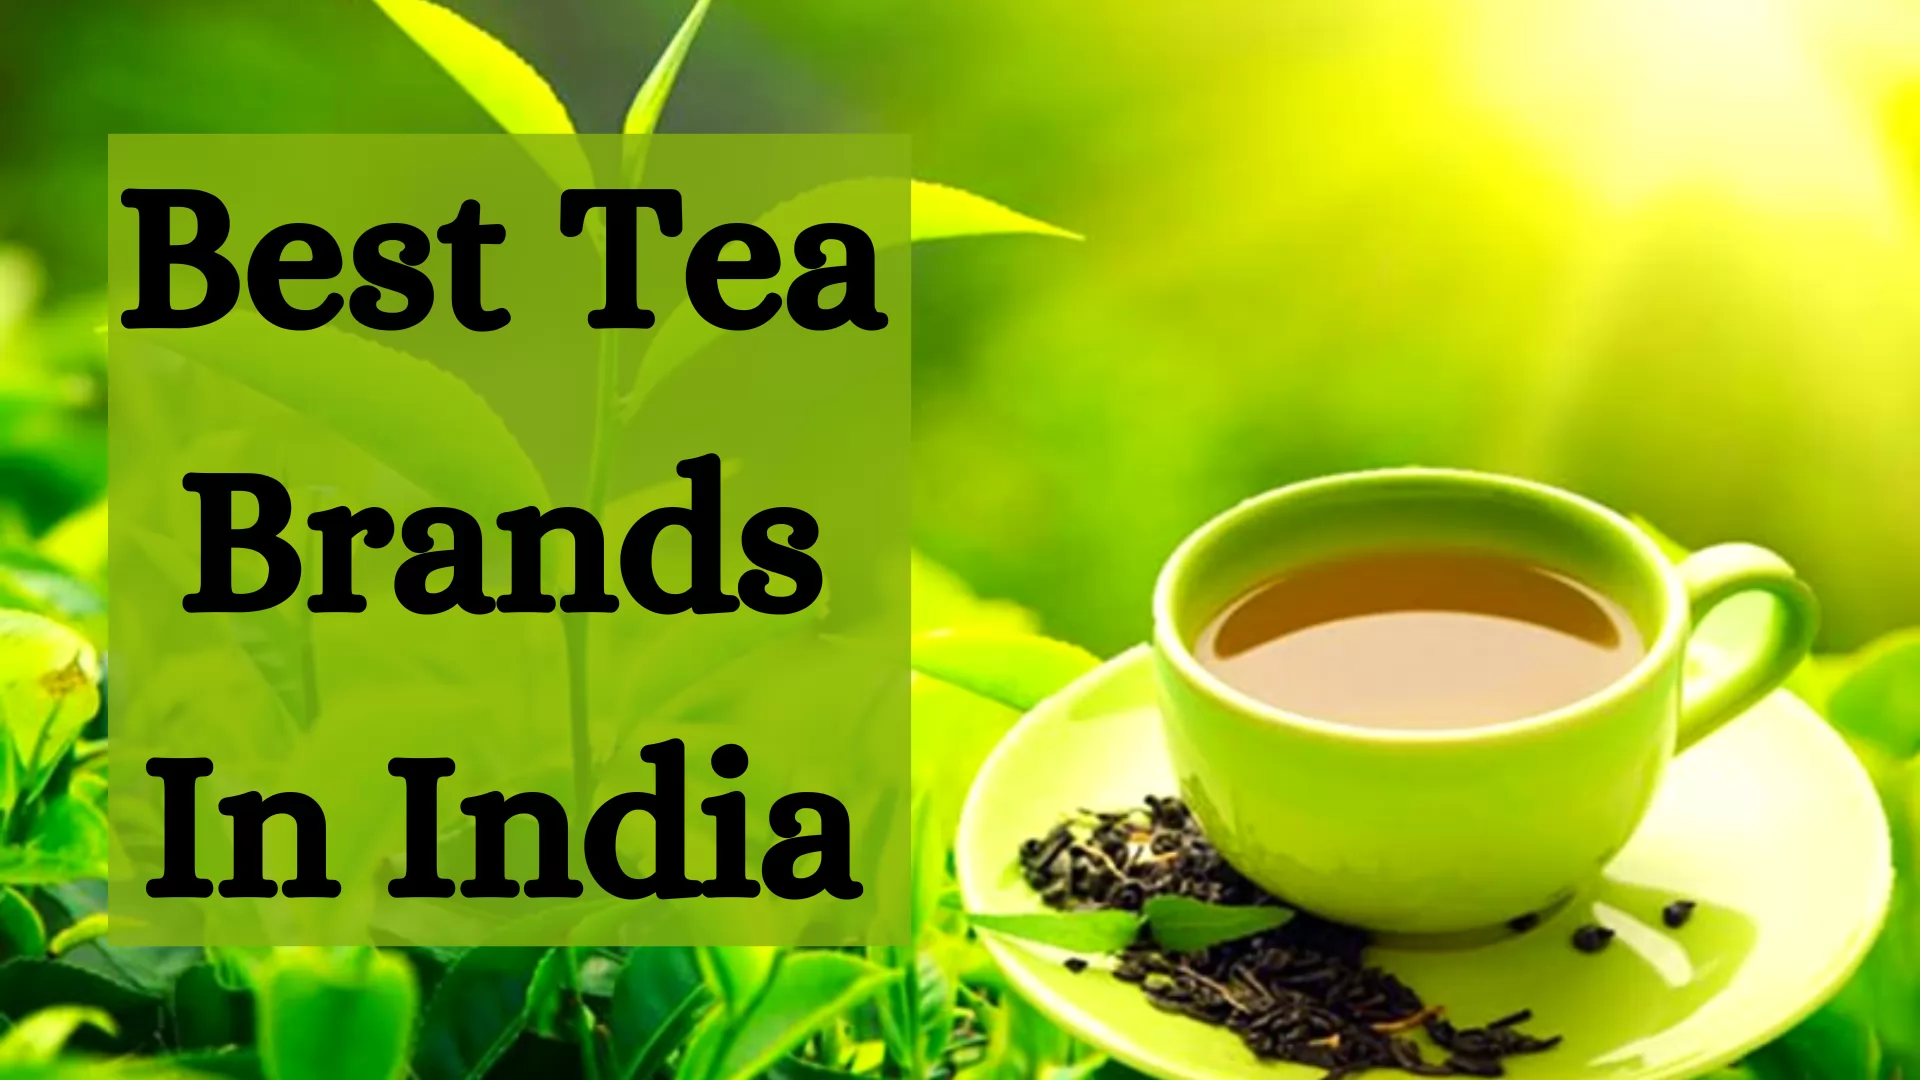 Best Tea Brands In India